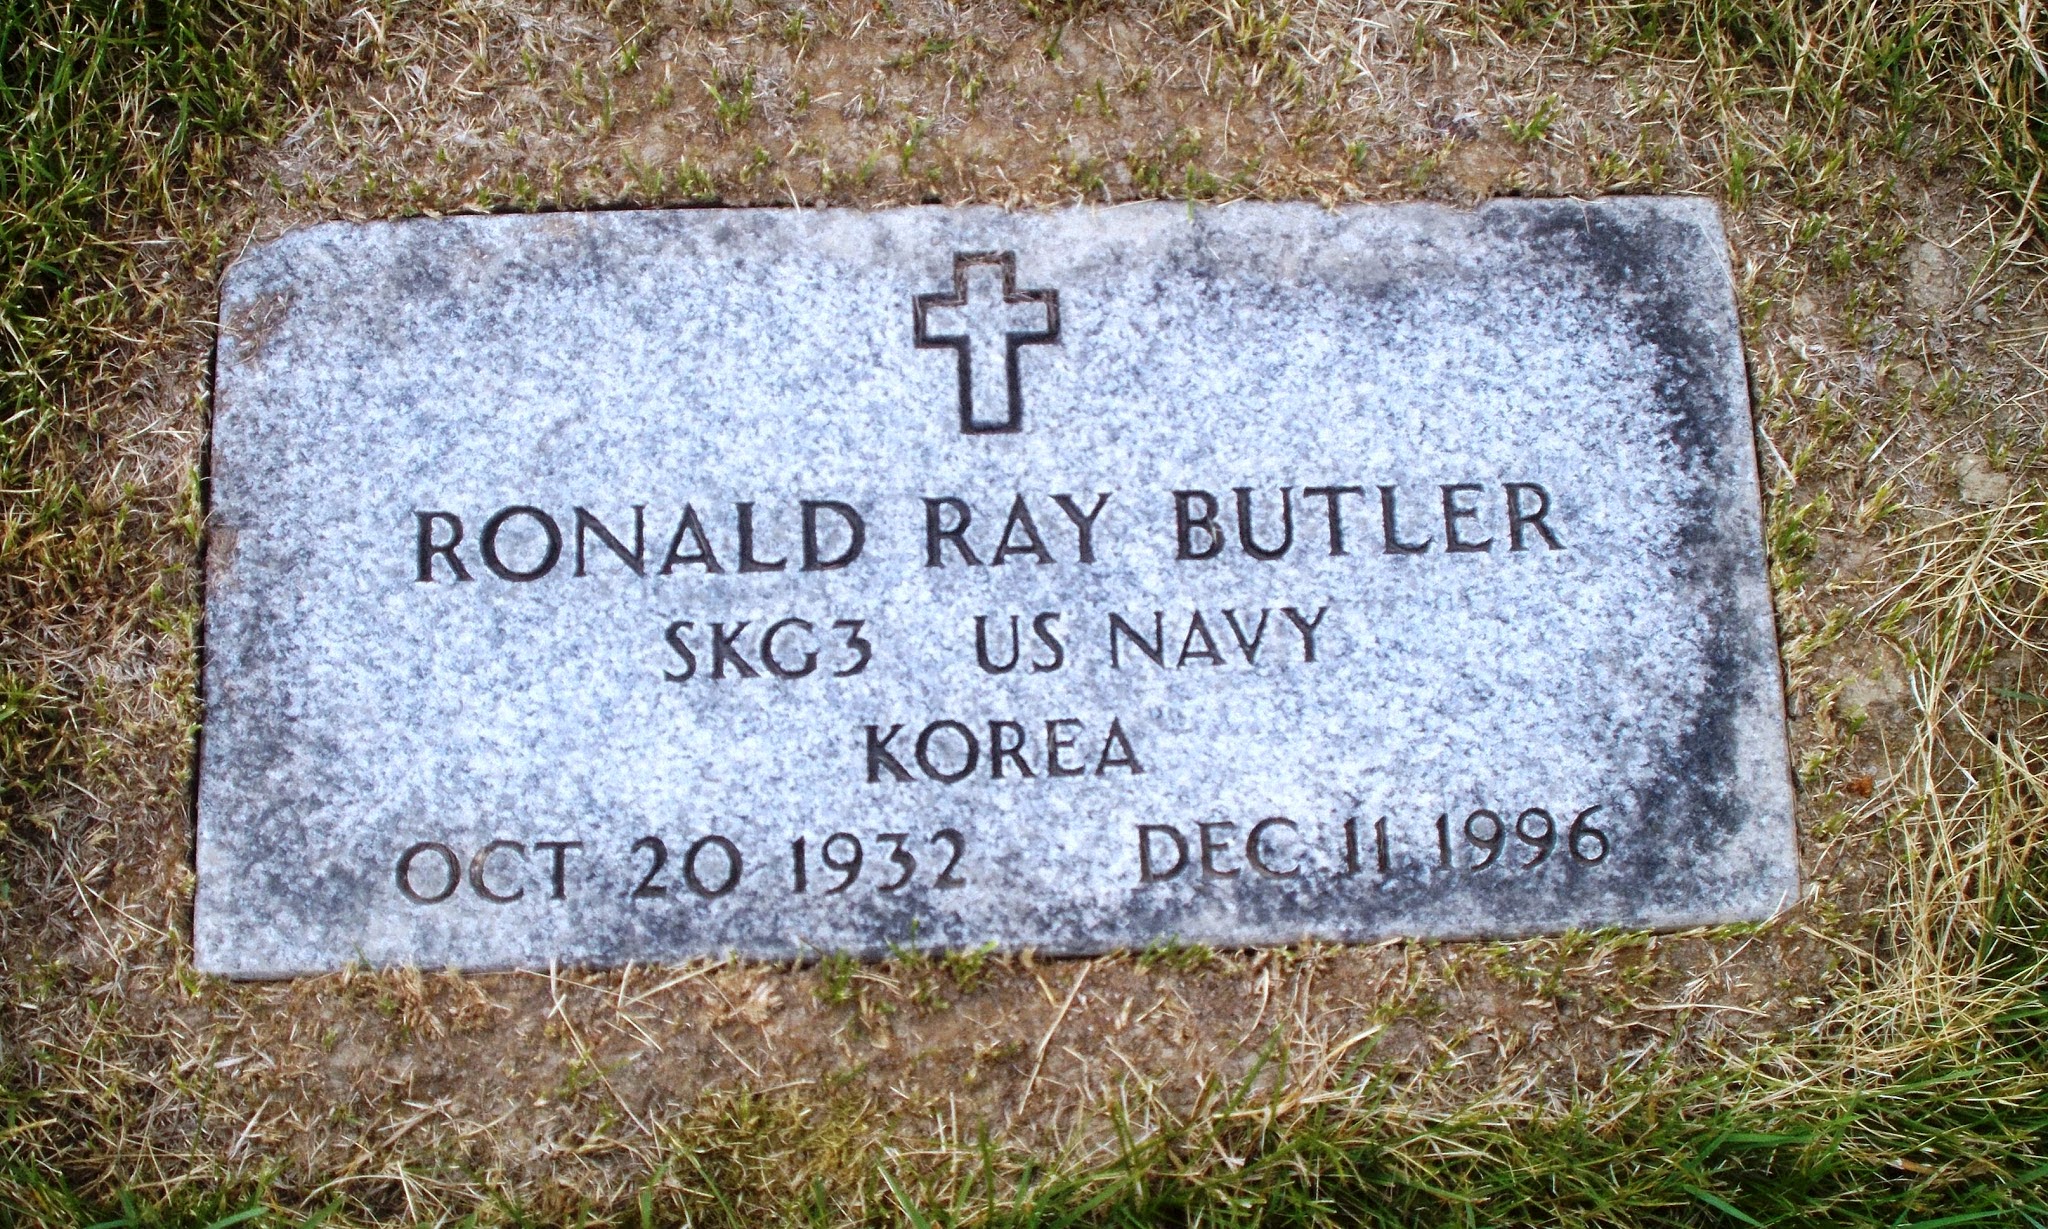 Ronald Ray Butler